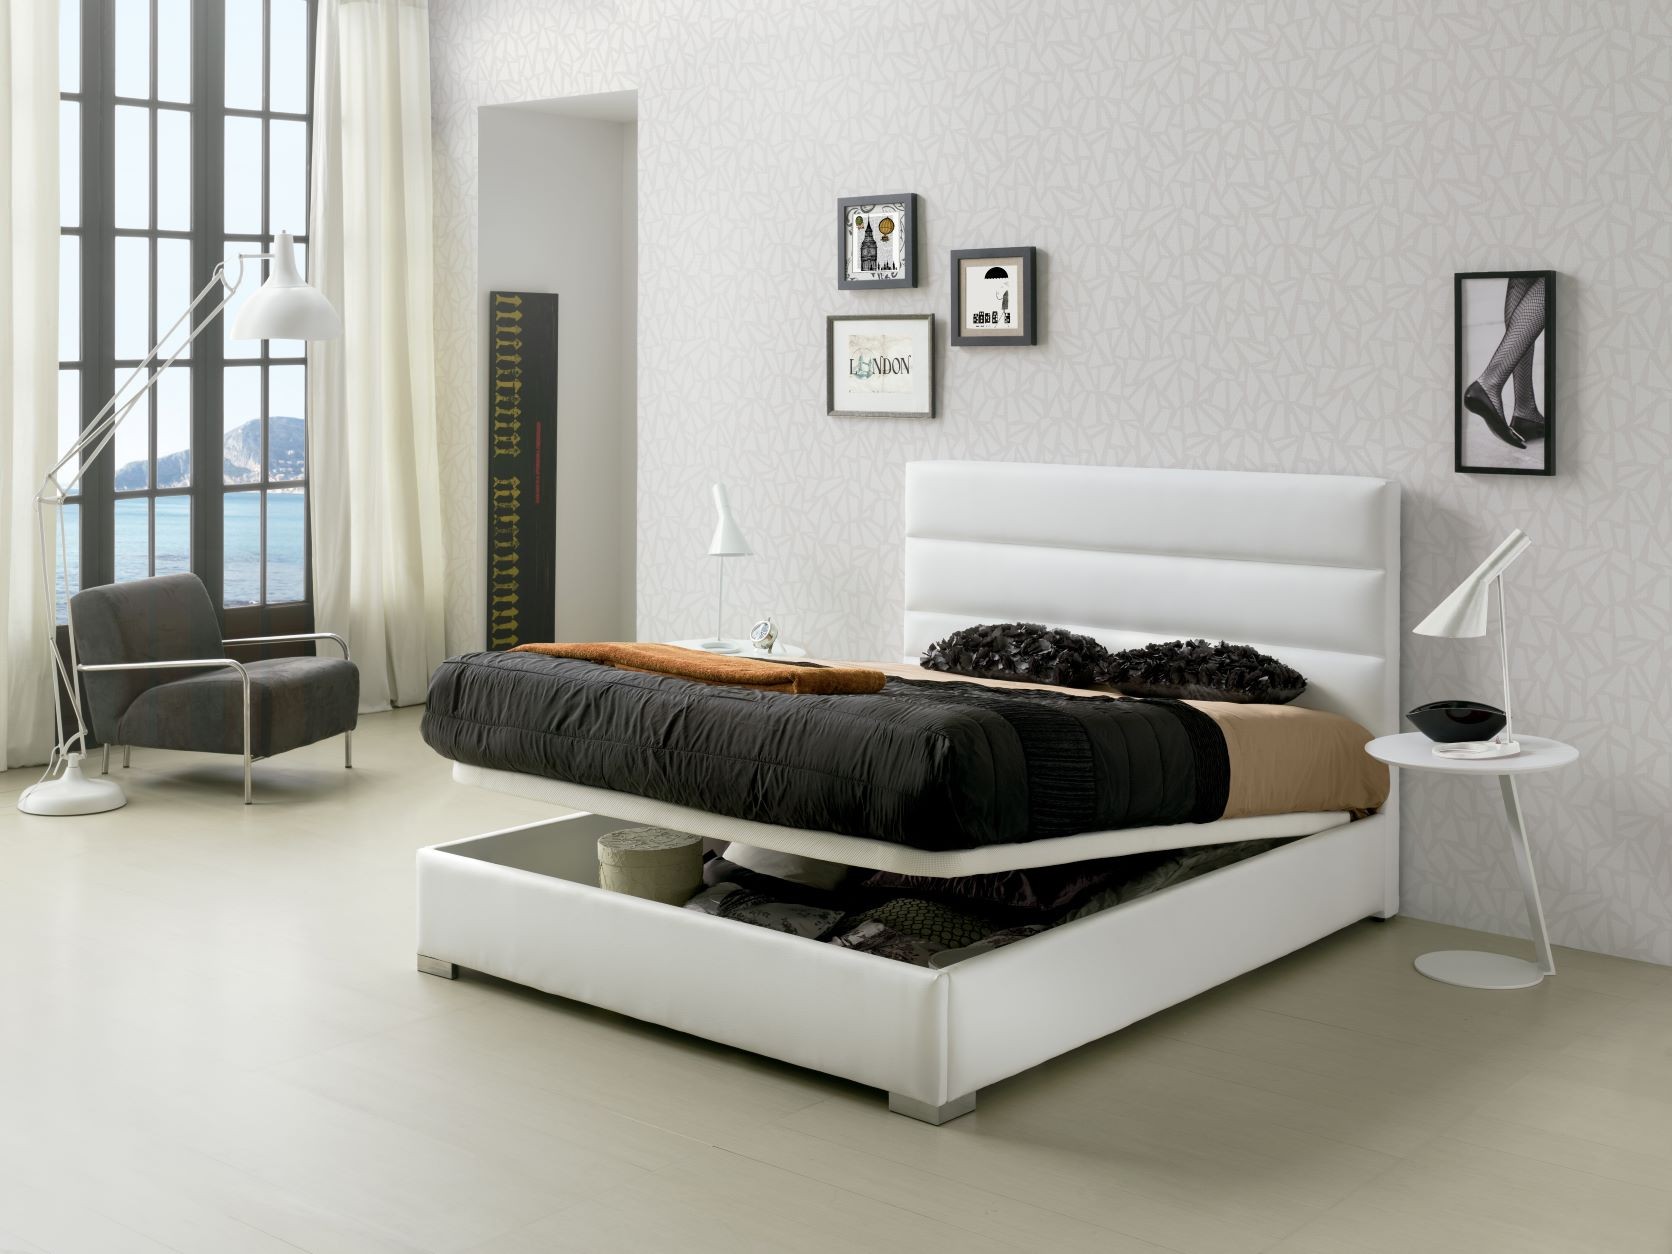 Estila Moderní kožená postel Lidia s čalouněním bílé barvy s vysokým čelem s úložným prostorem 90-180cm